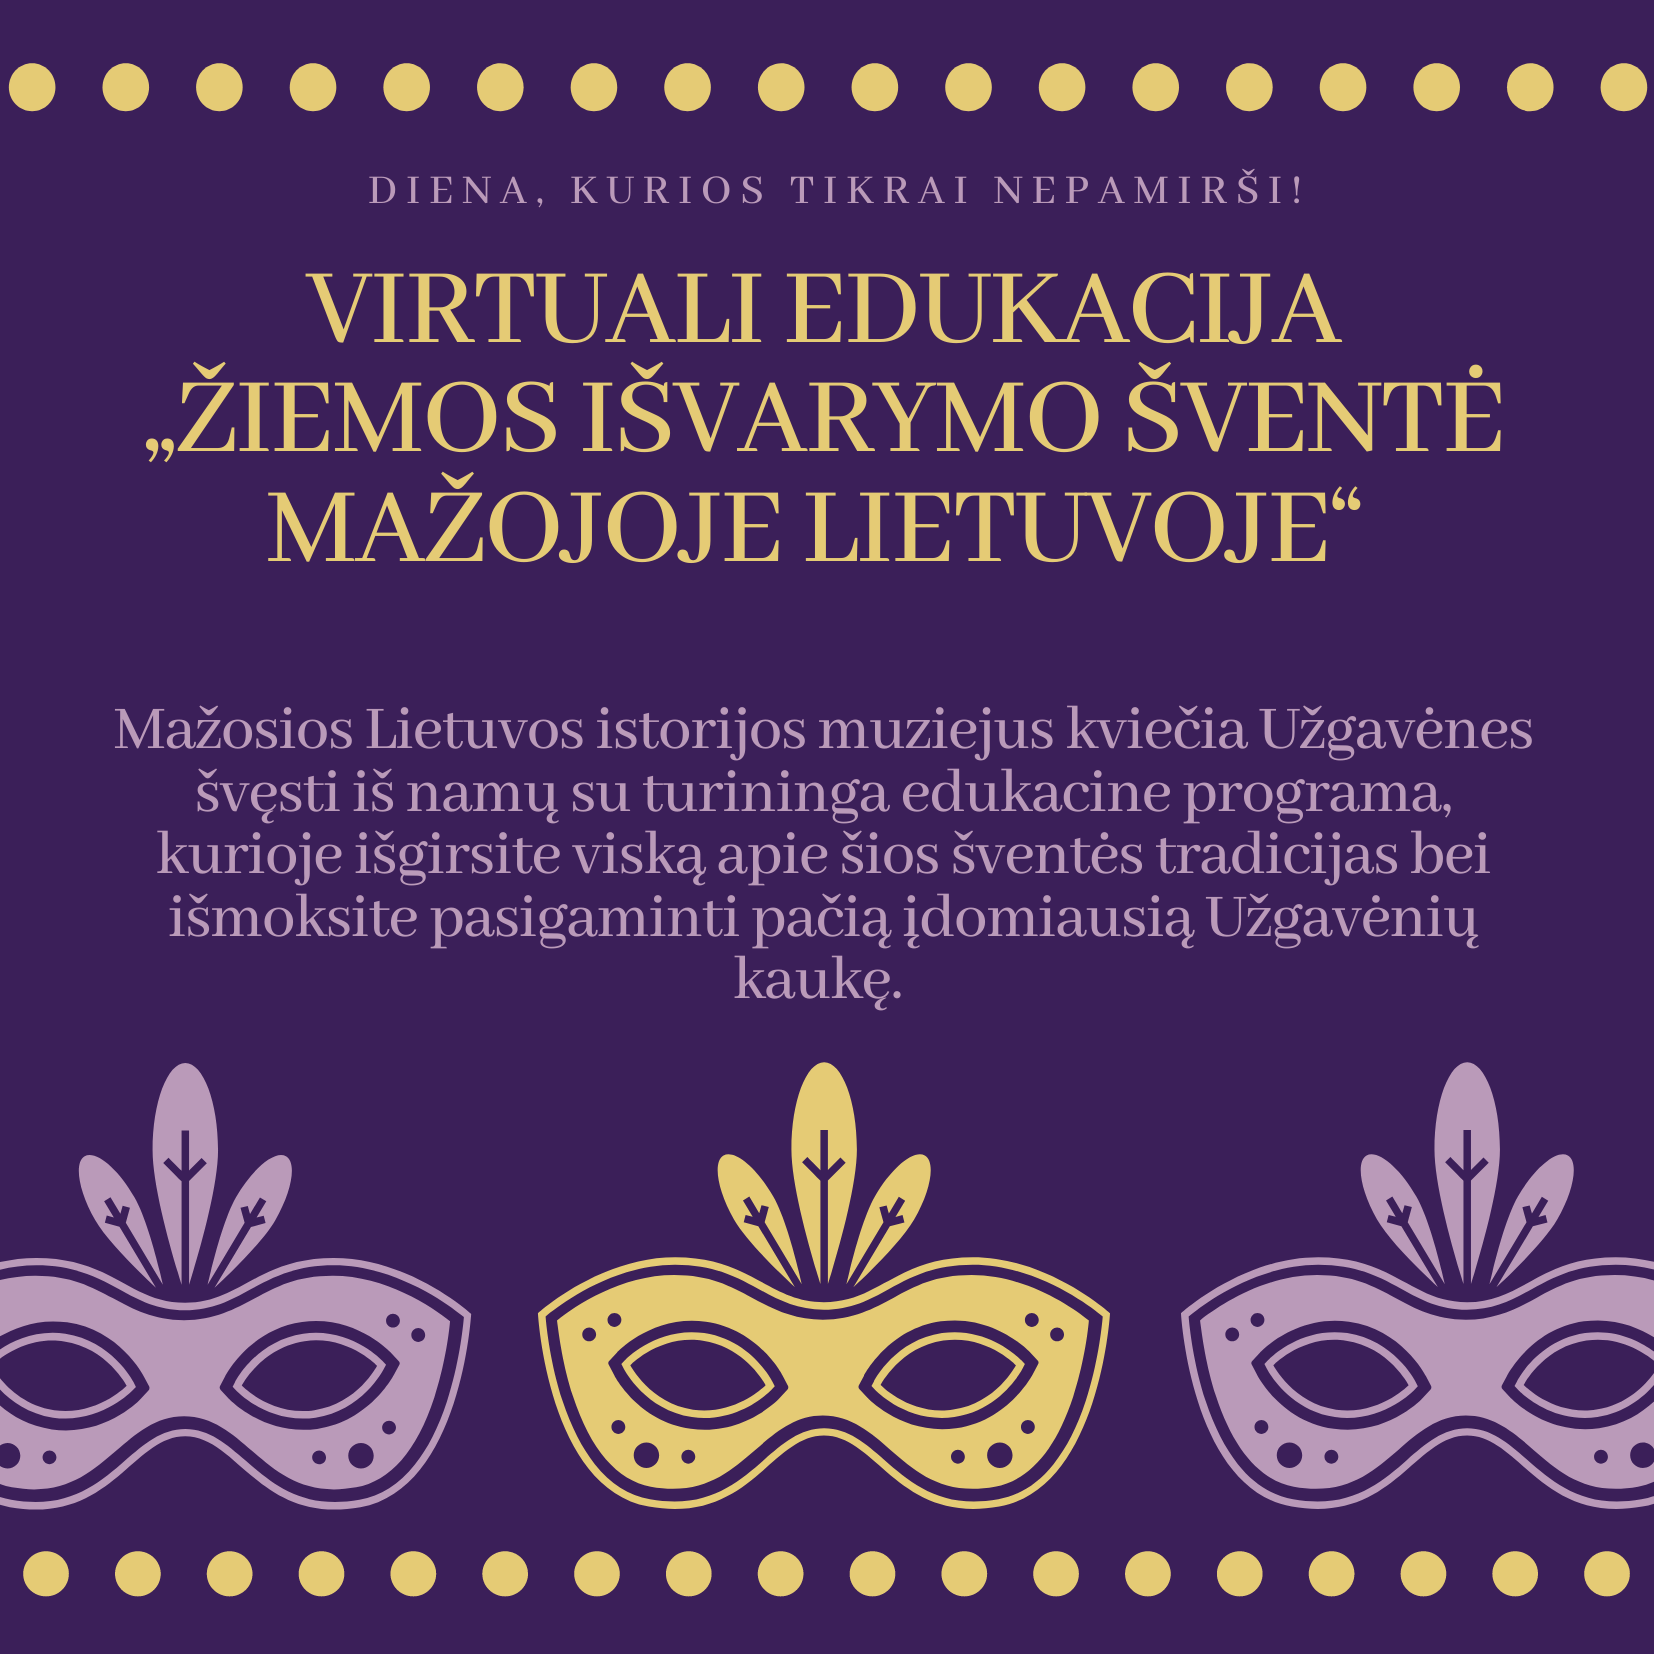 Žiemos išvarymo šventė Mažojoje Lietuvoje &#8211; virtuali edukacija Uzgavenes